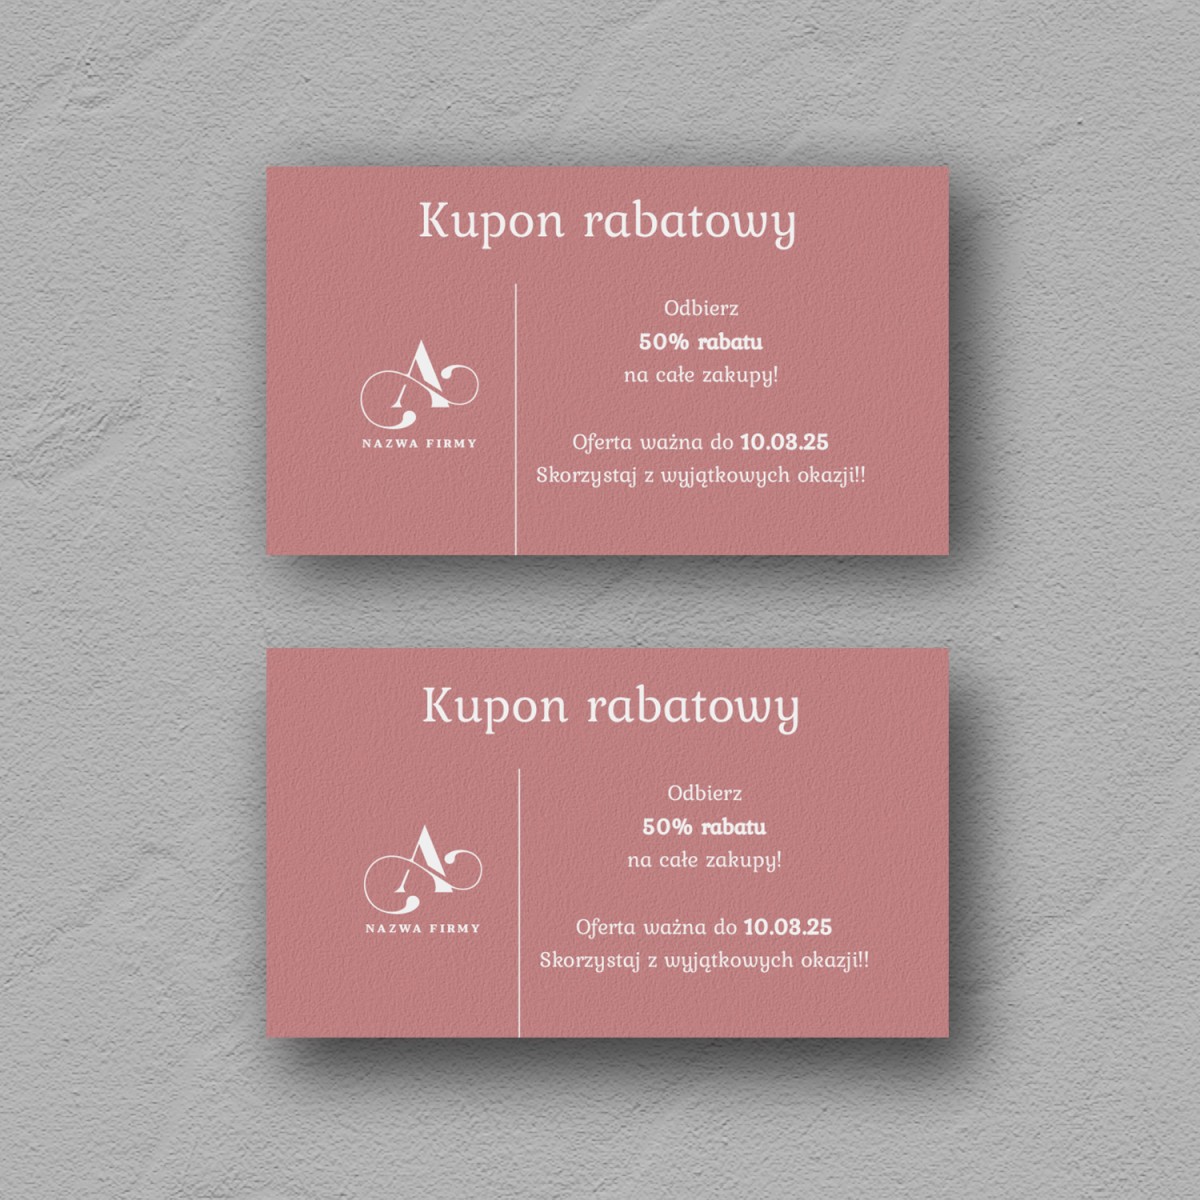 Minimalistyczne karty rabatowe na różowym papierze z białym nadrukiem - Rose